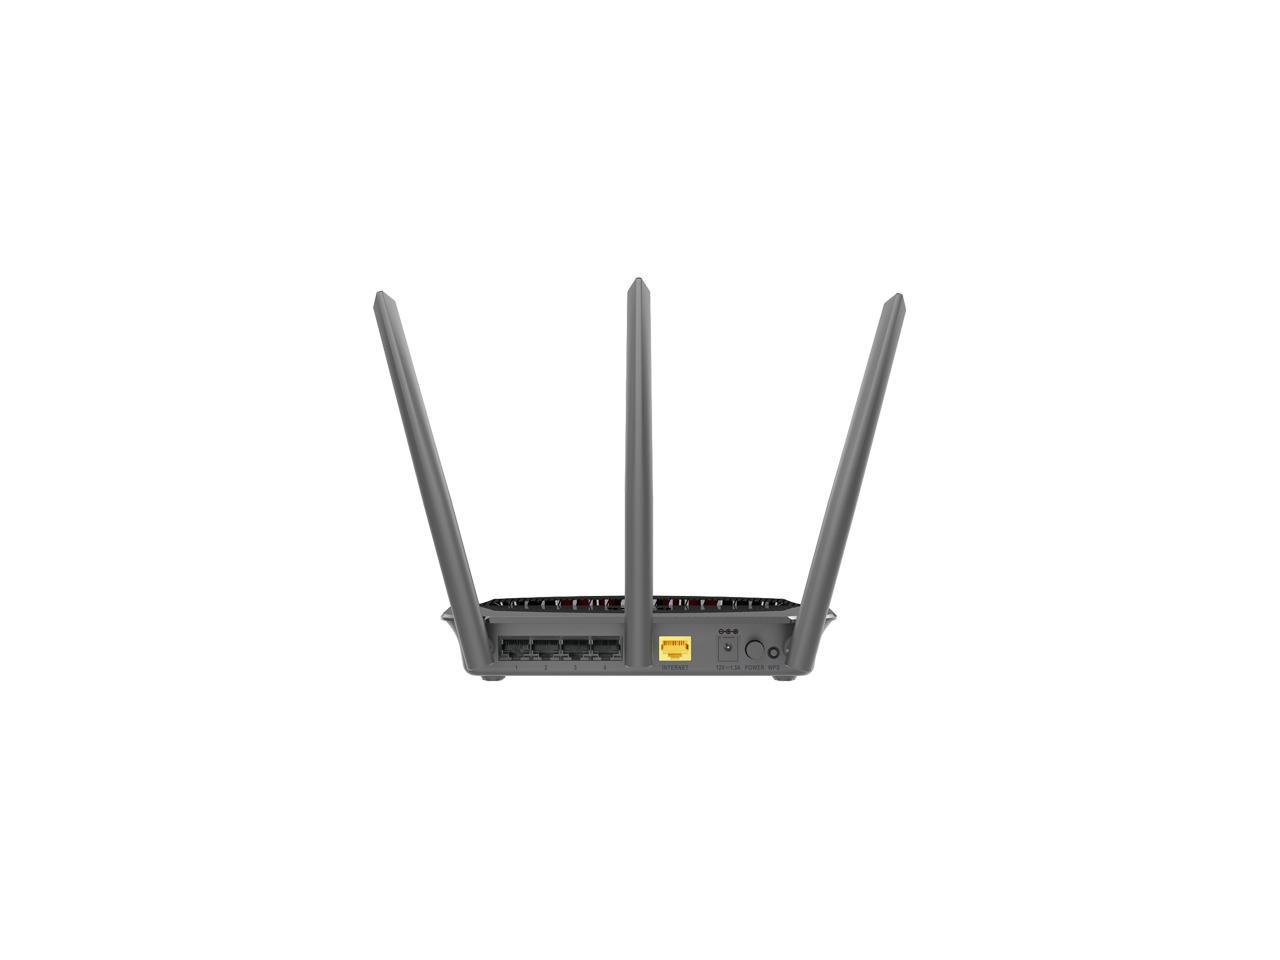 D-Link DIR-859 AC1750 High Power Wi-Fi Gigabit Router - Newegg.com